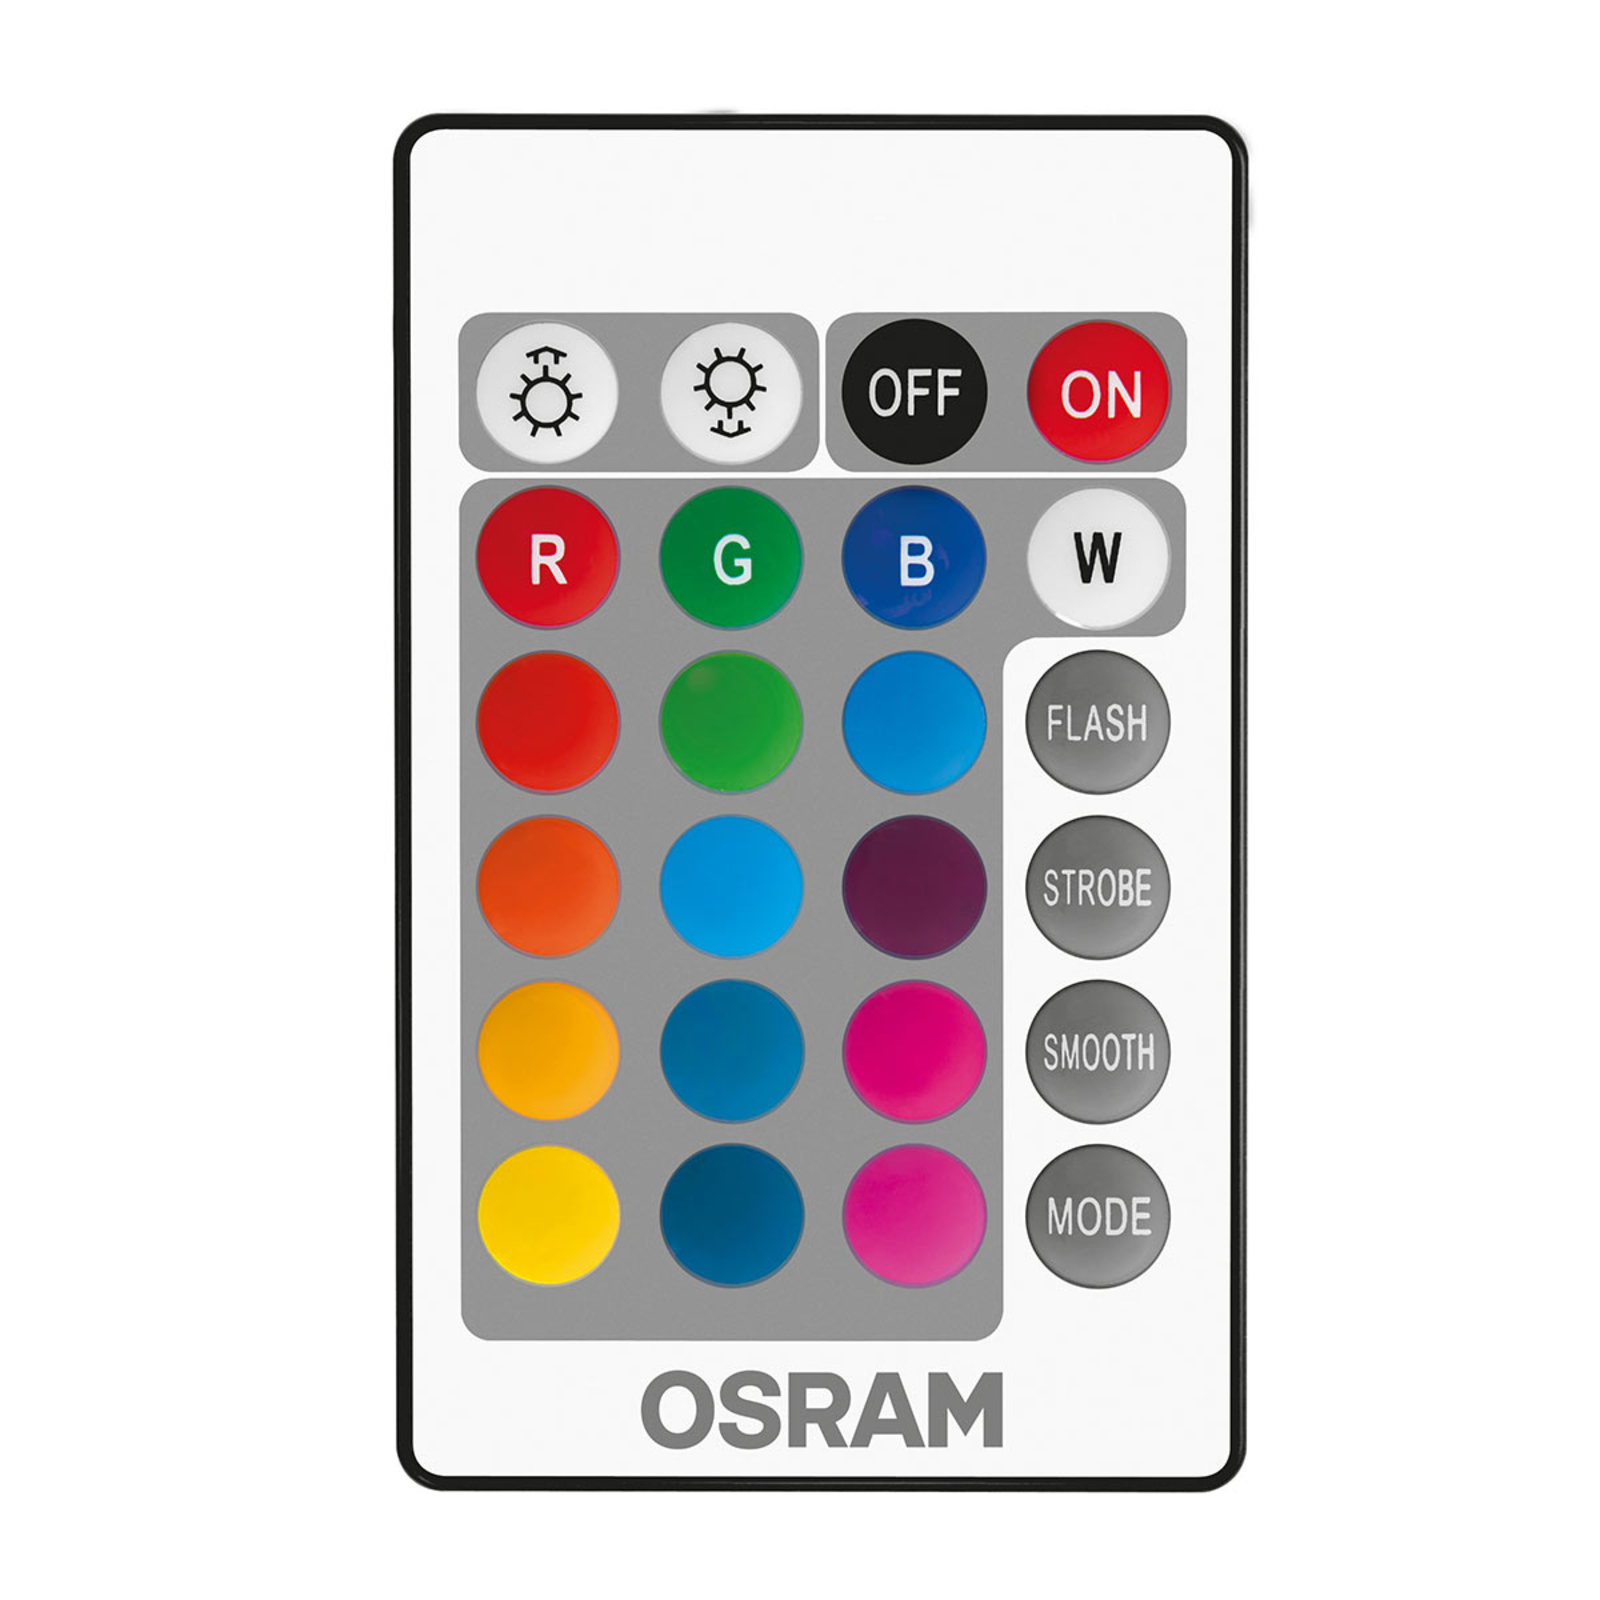 OSRAM LED lámpa E14 4,2W Star+ csepp távvez. matt